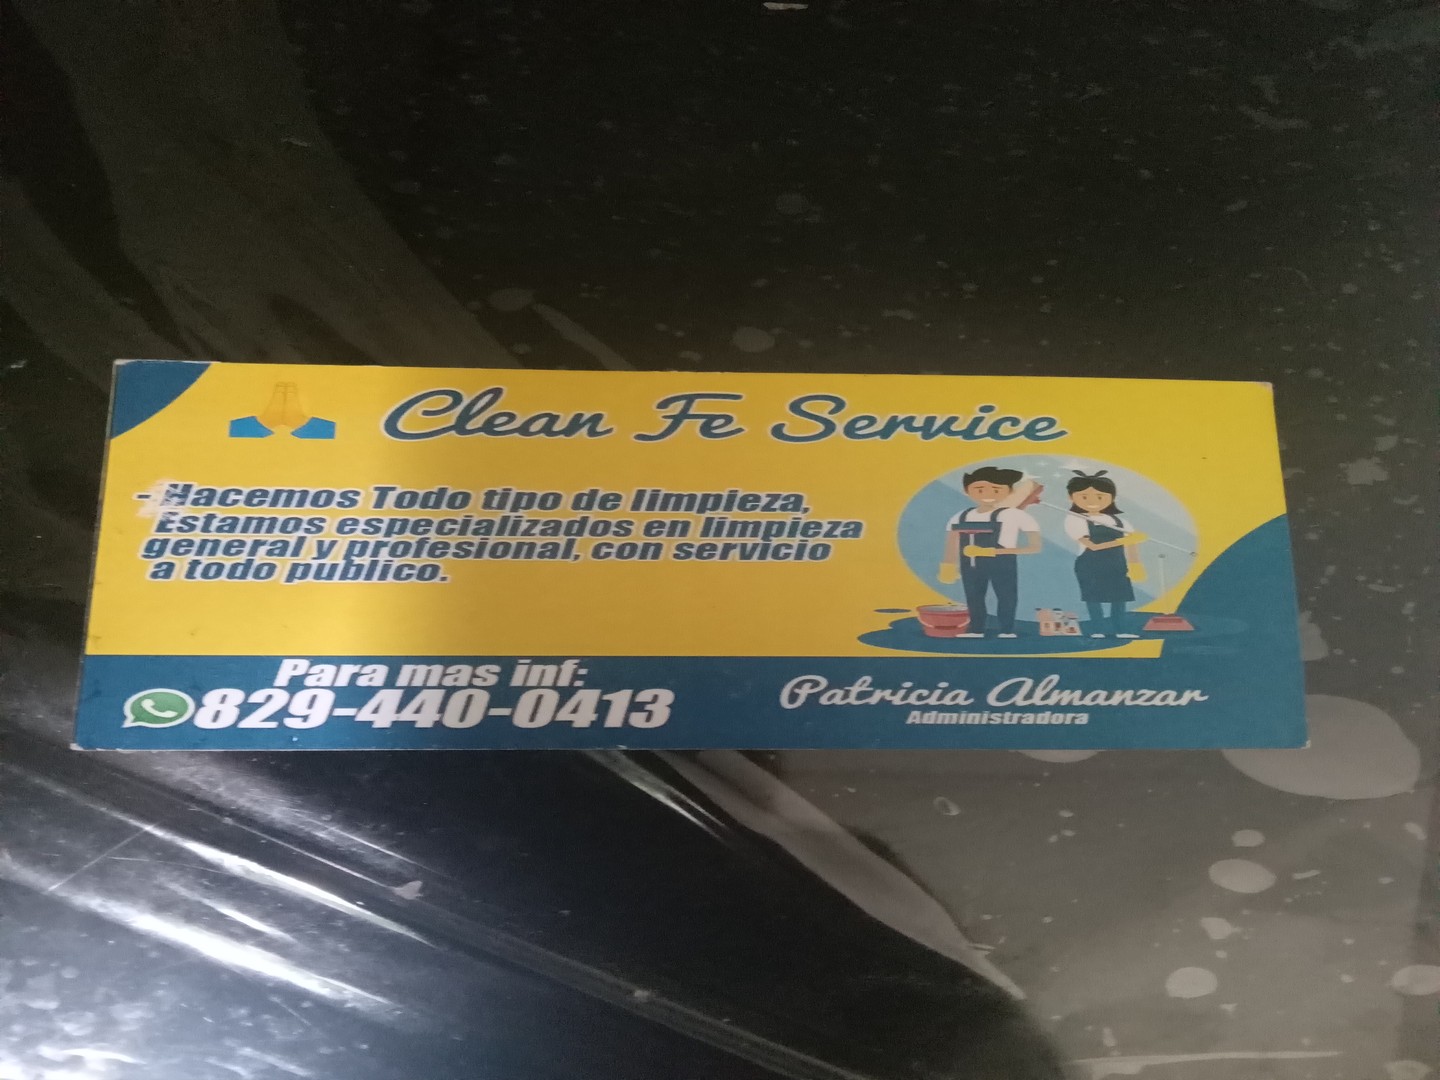 servicios profesionales - Hacemos todo tipo de limpieza 

DIOS LES BENDIGA  0